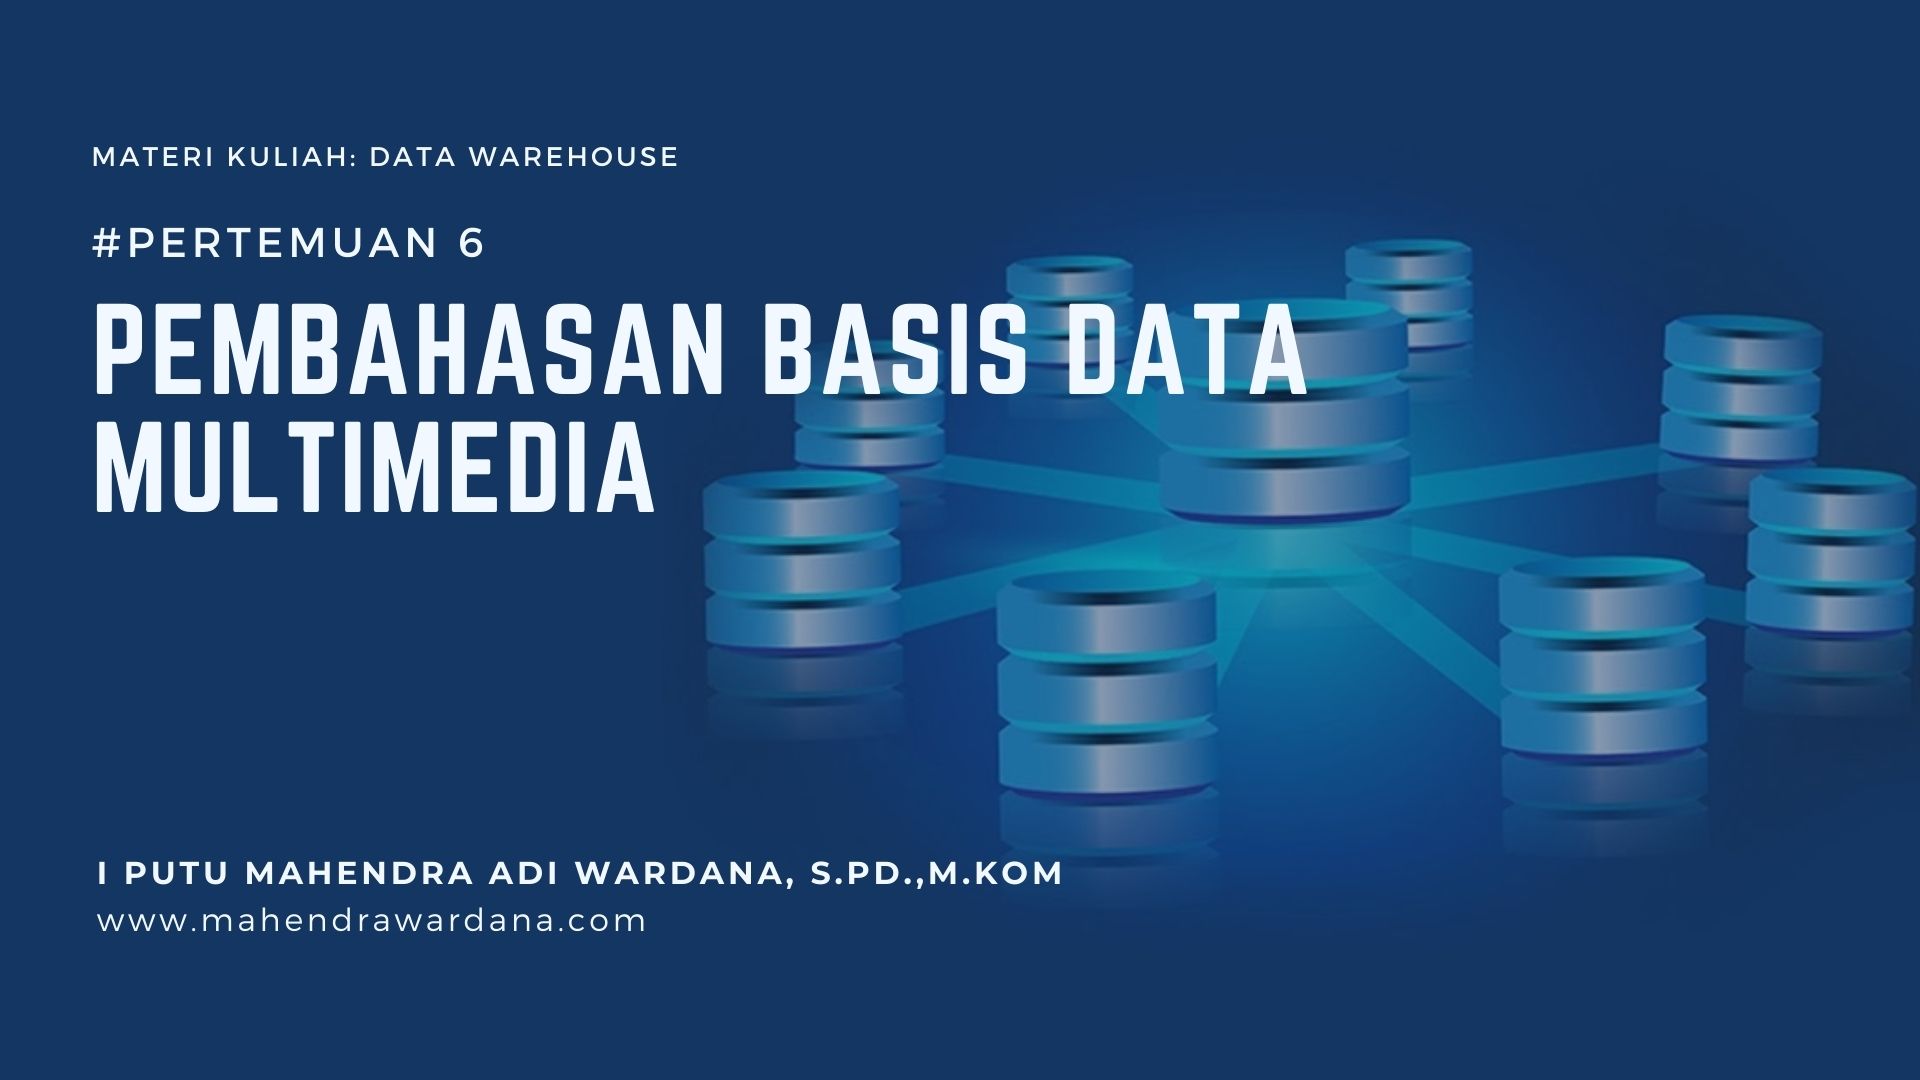 Pertemuan 6 - Pembahasan Basis Data Multimedia